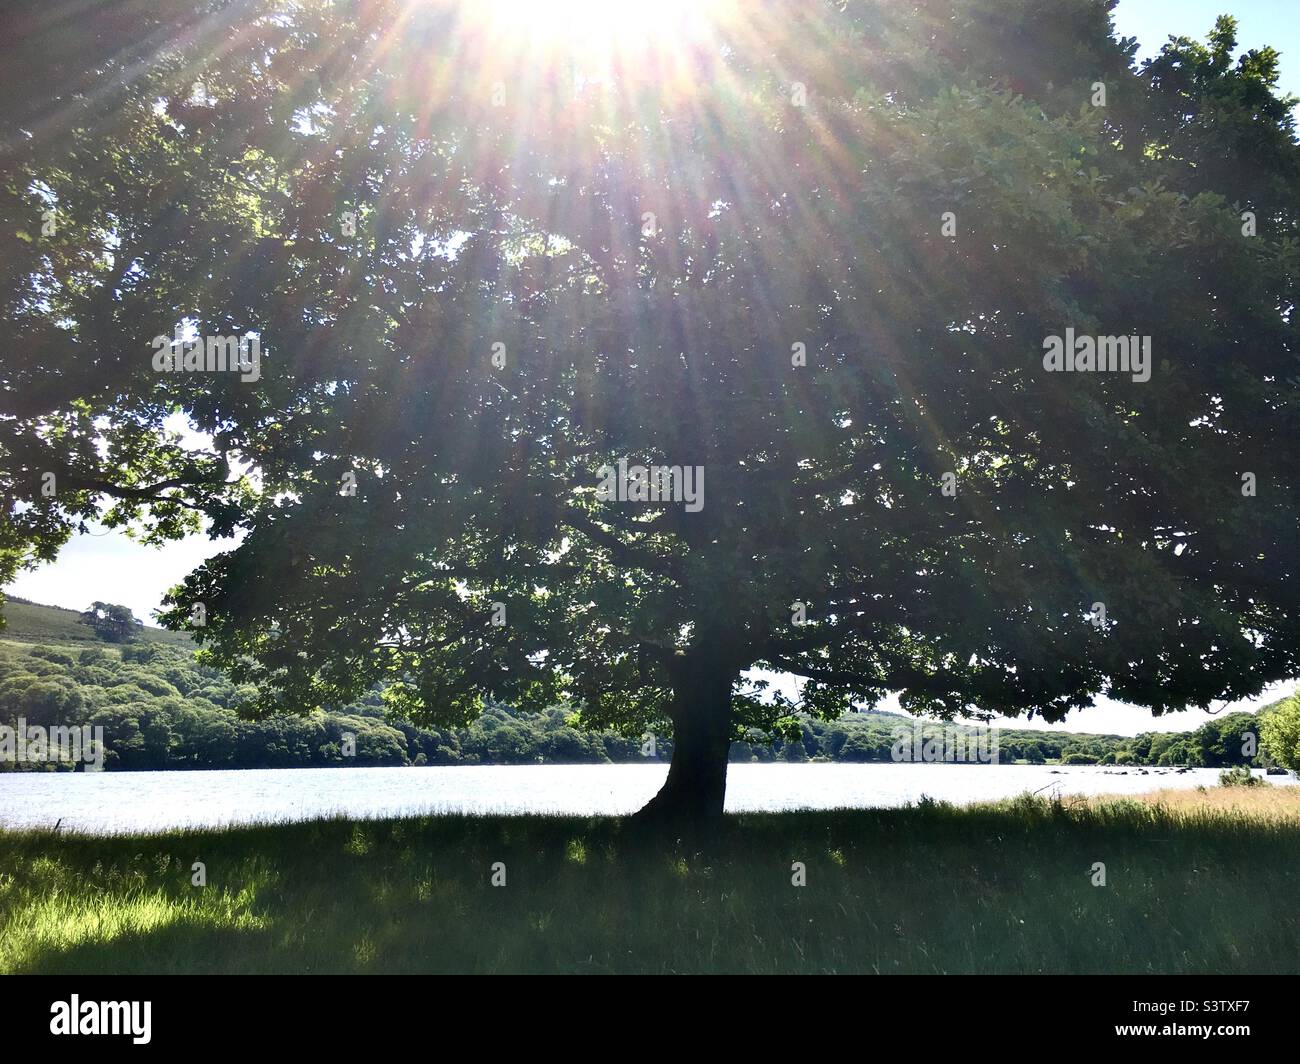 Light, sunlight, tree, oak tree, green, lake, forest, meadow Stock Photo